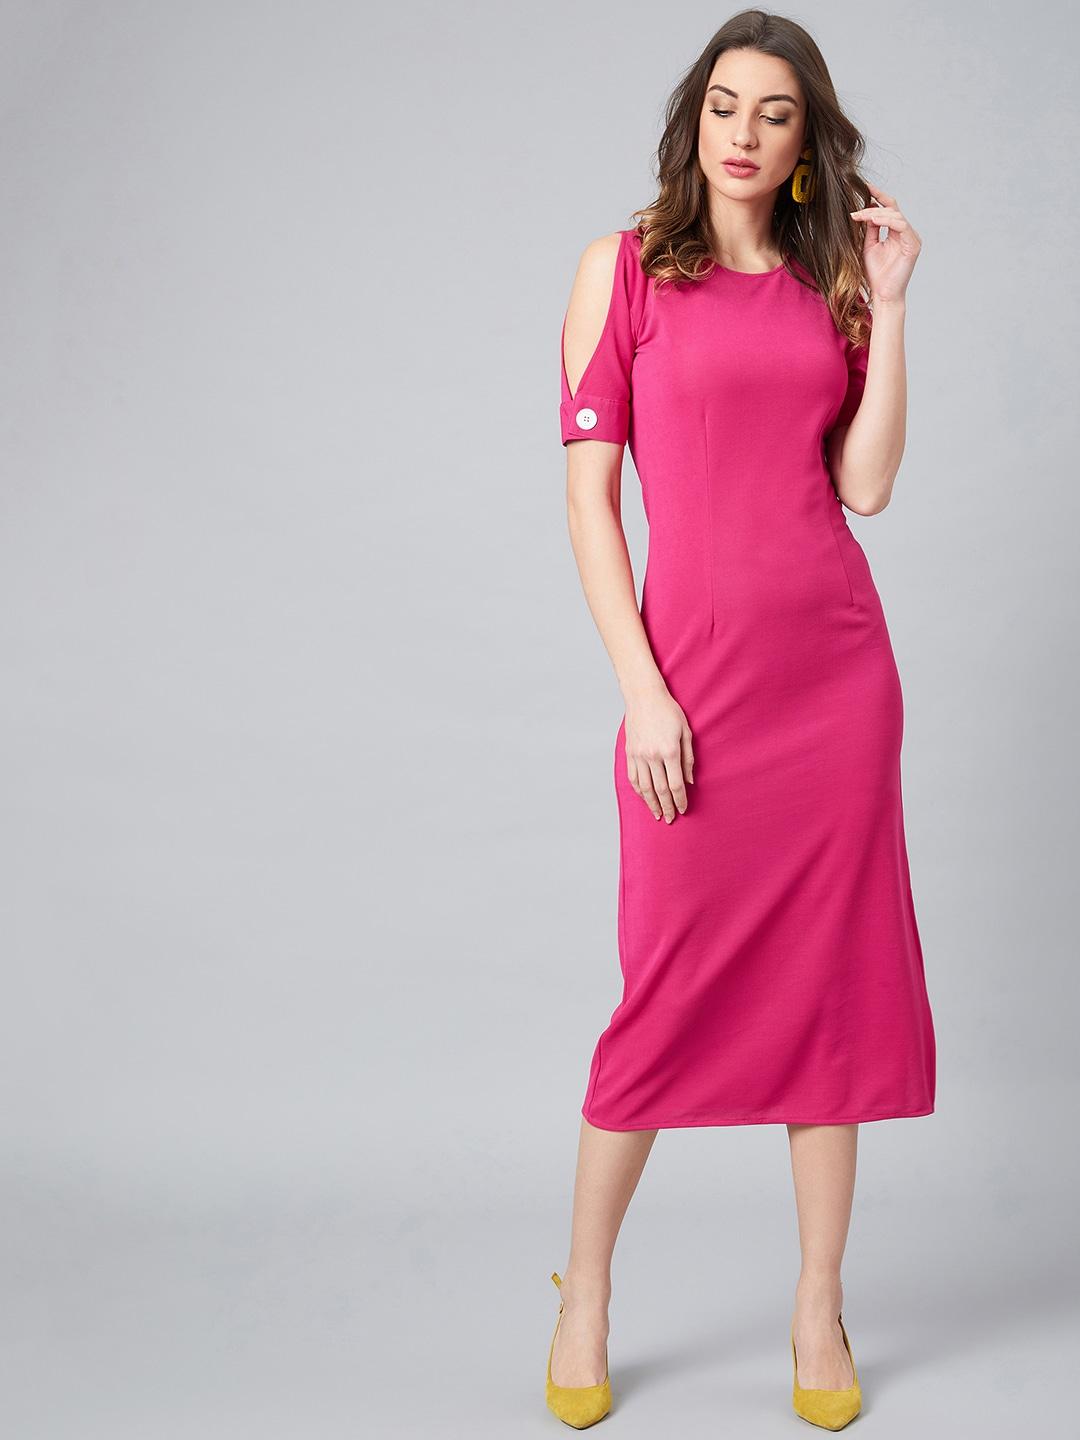 athena-women-pink-solid-sheath-dress